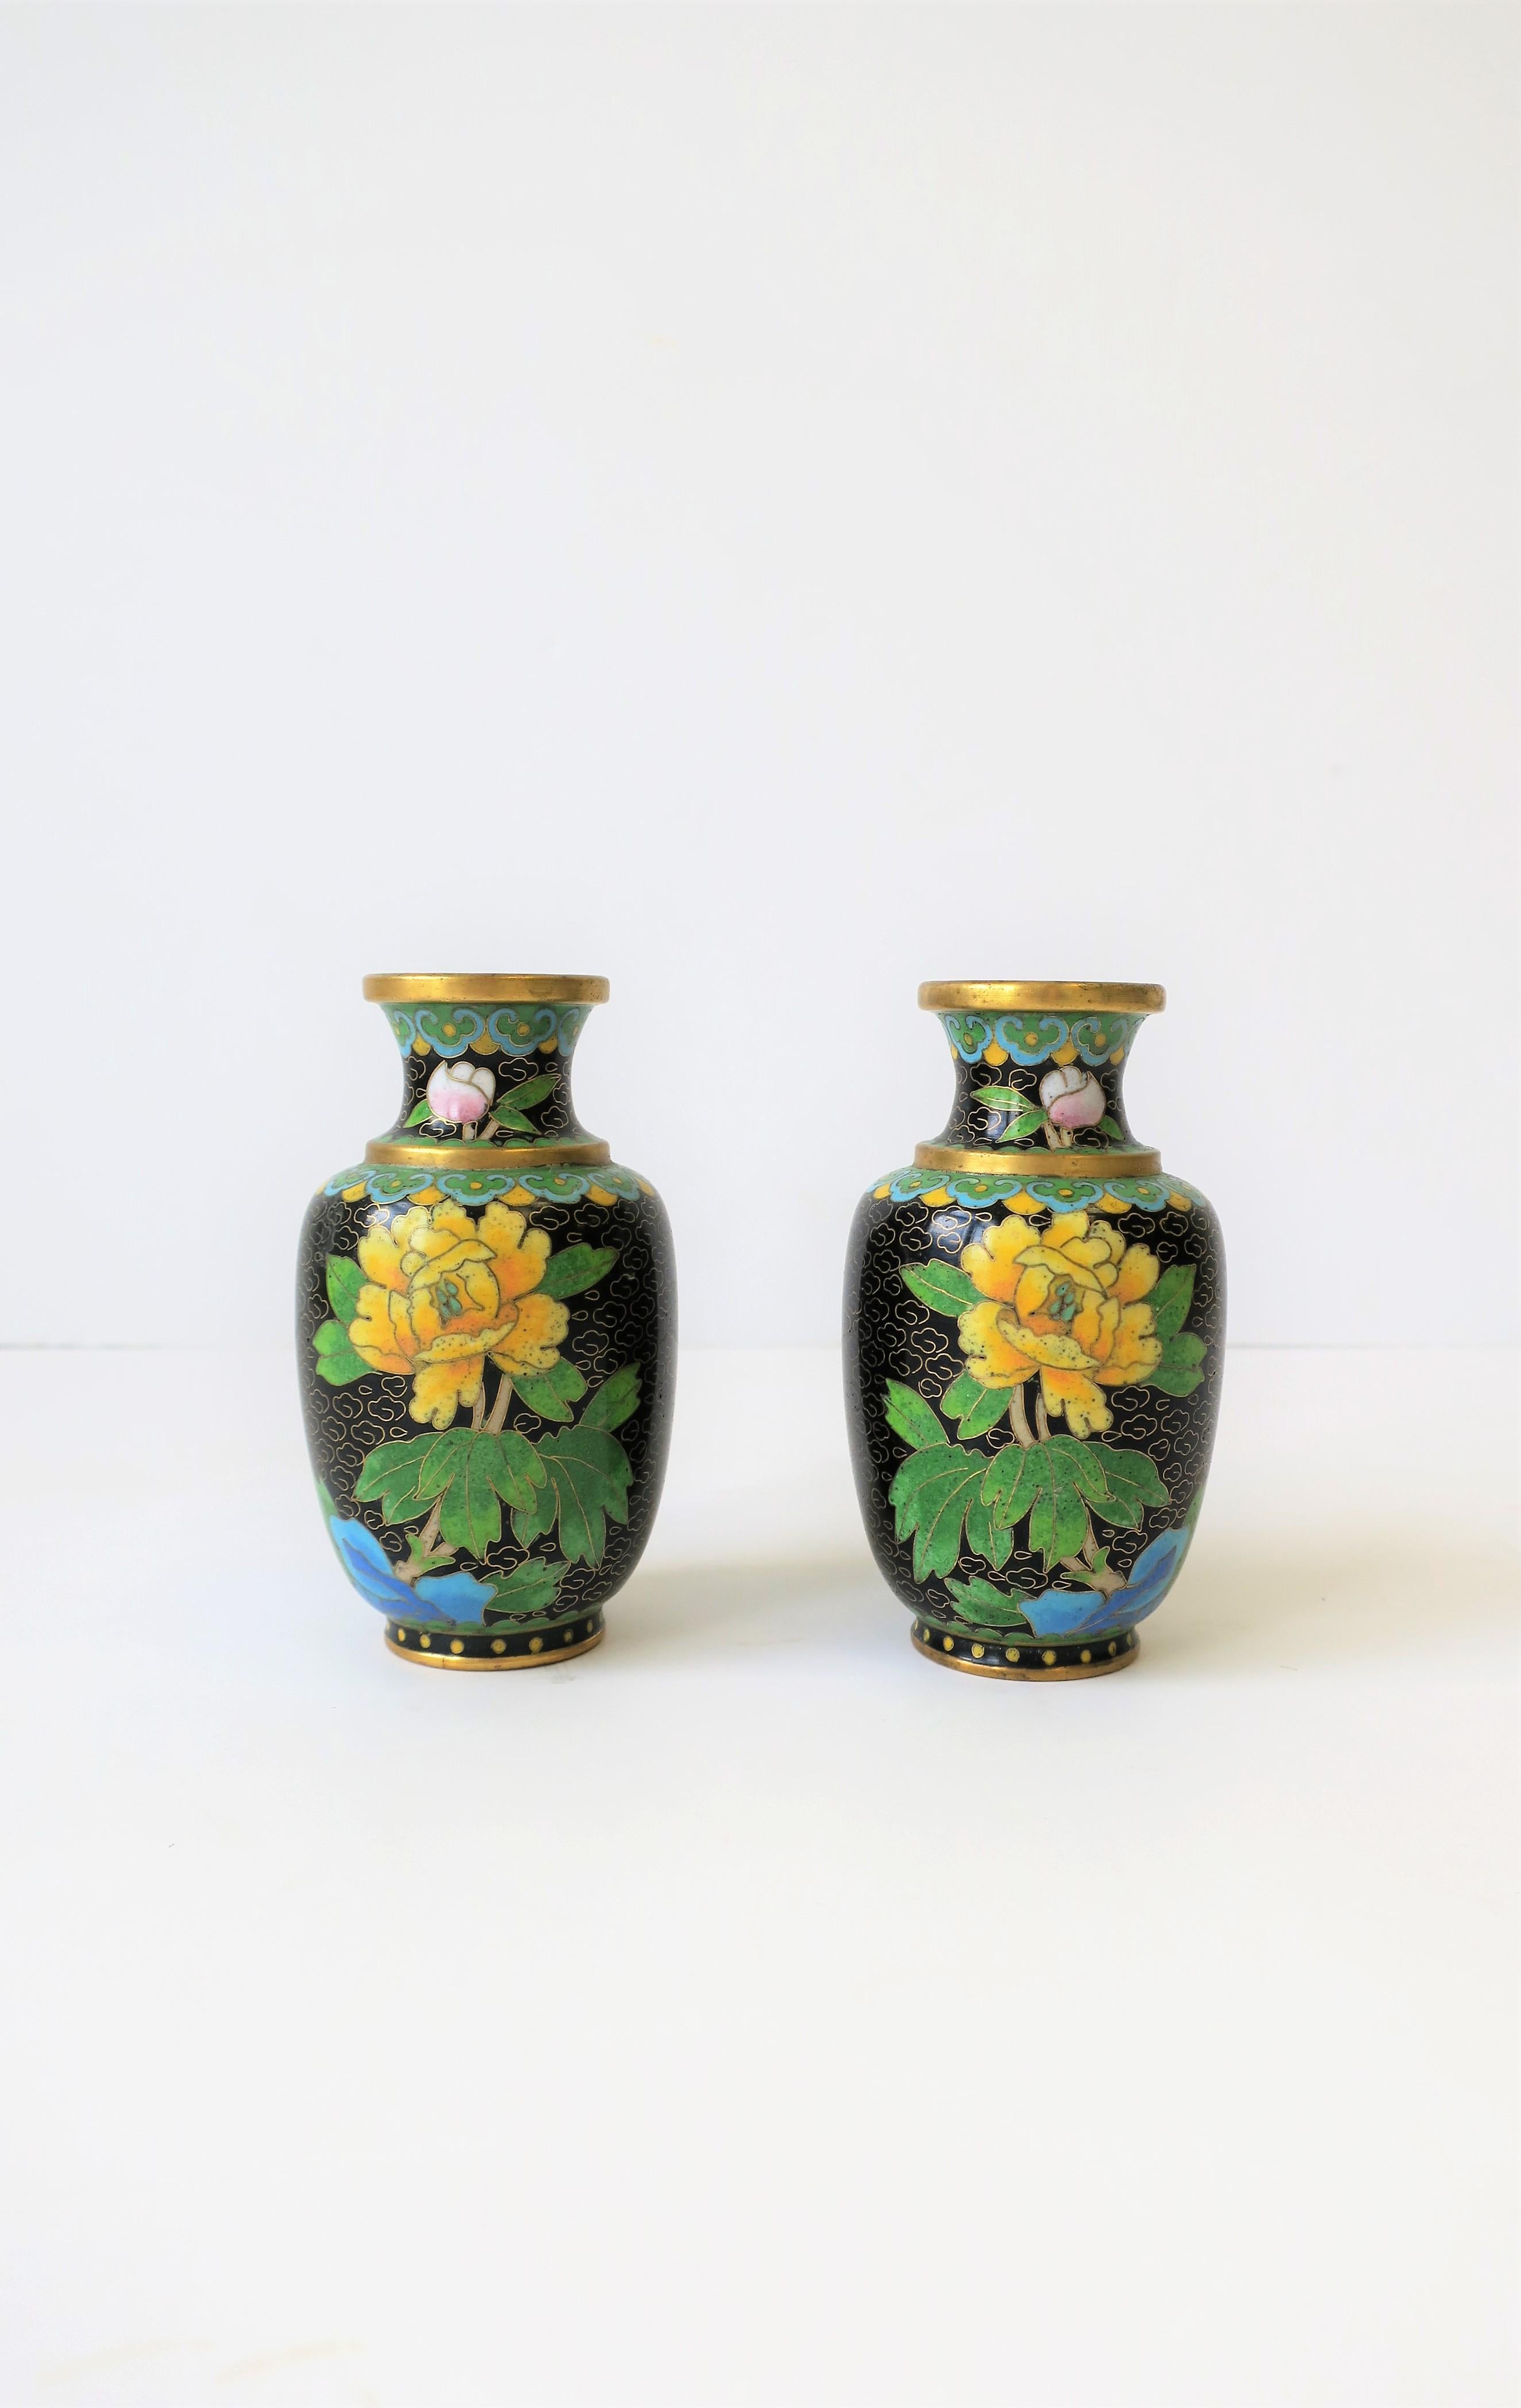 Magnifique paire de vases vintage en laiton et émail cloisonné asiatique jaune, noir et vert, vers le début ou le milieu du 20e siècle, Chine. Les vases sont ornés d'une fleur en émail jaune et d'un motif de feuilles vertes sur fond noir. Les autres